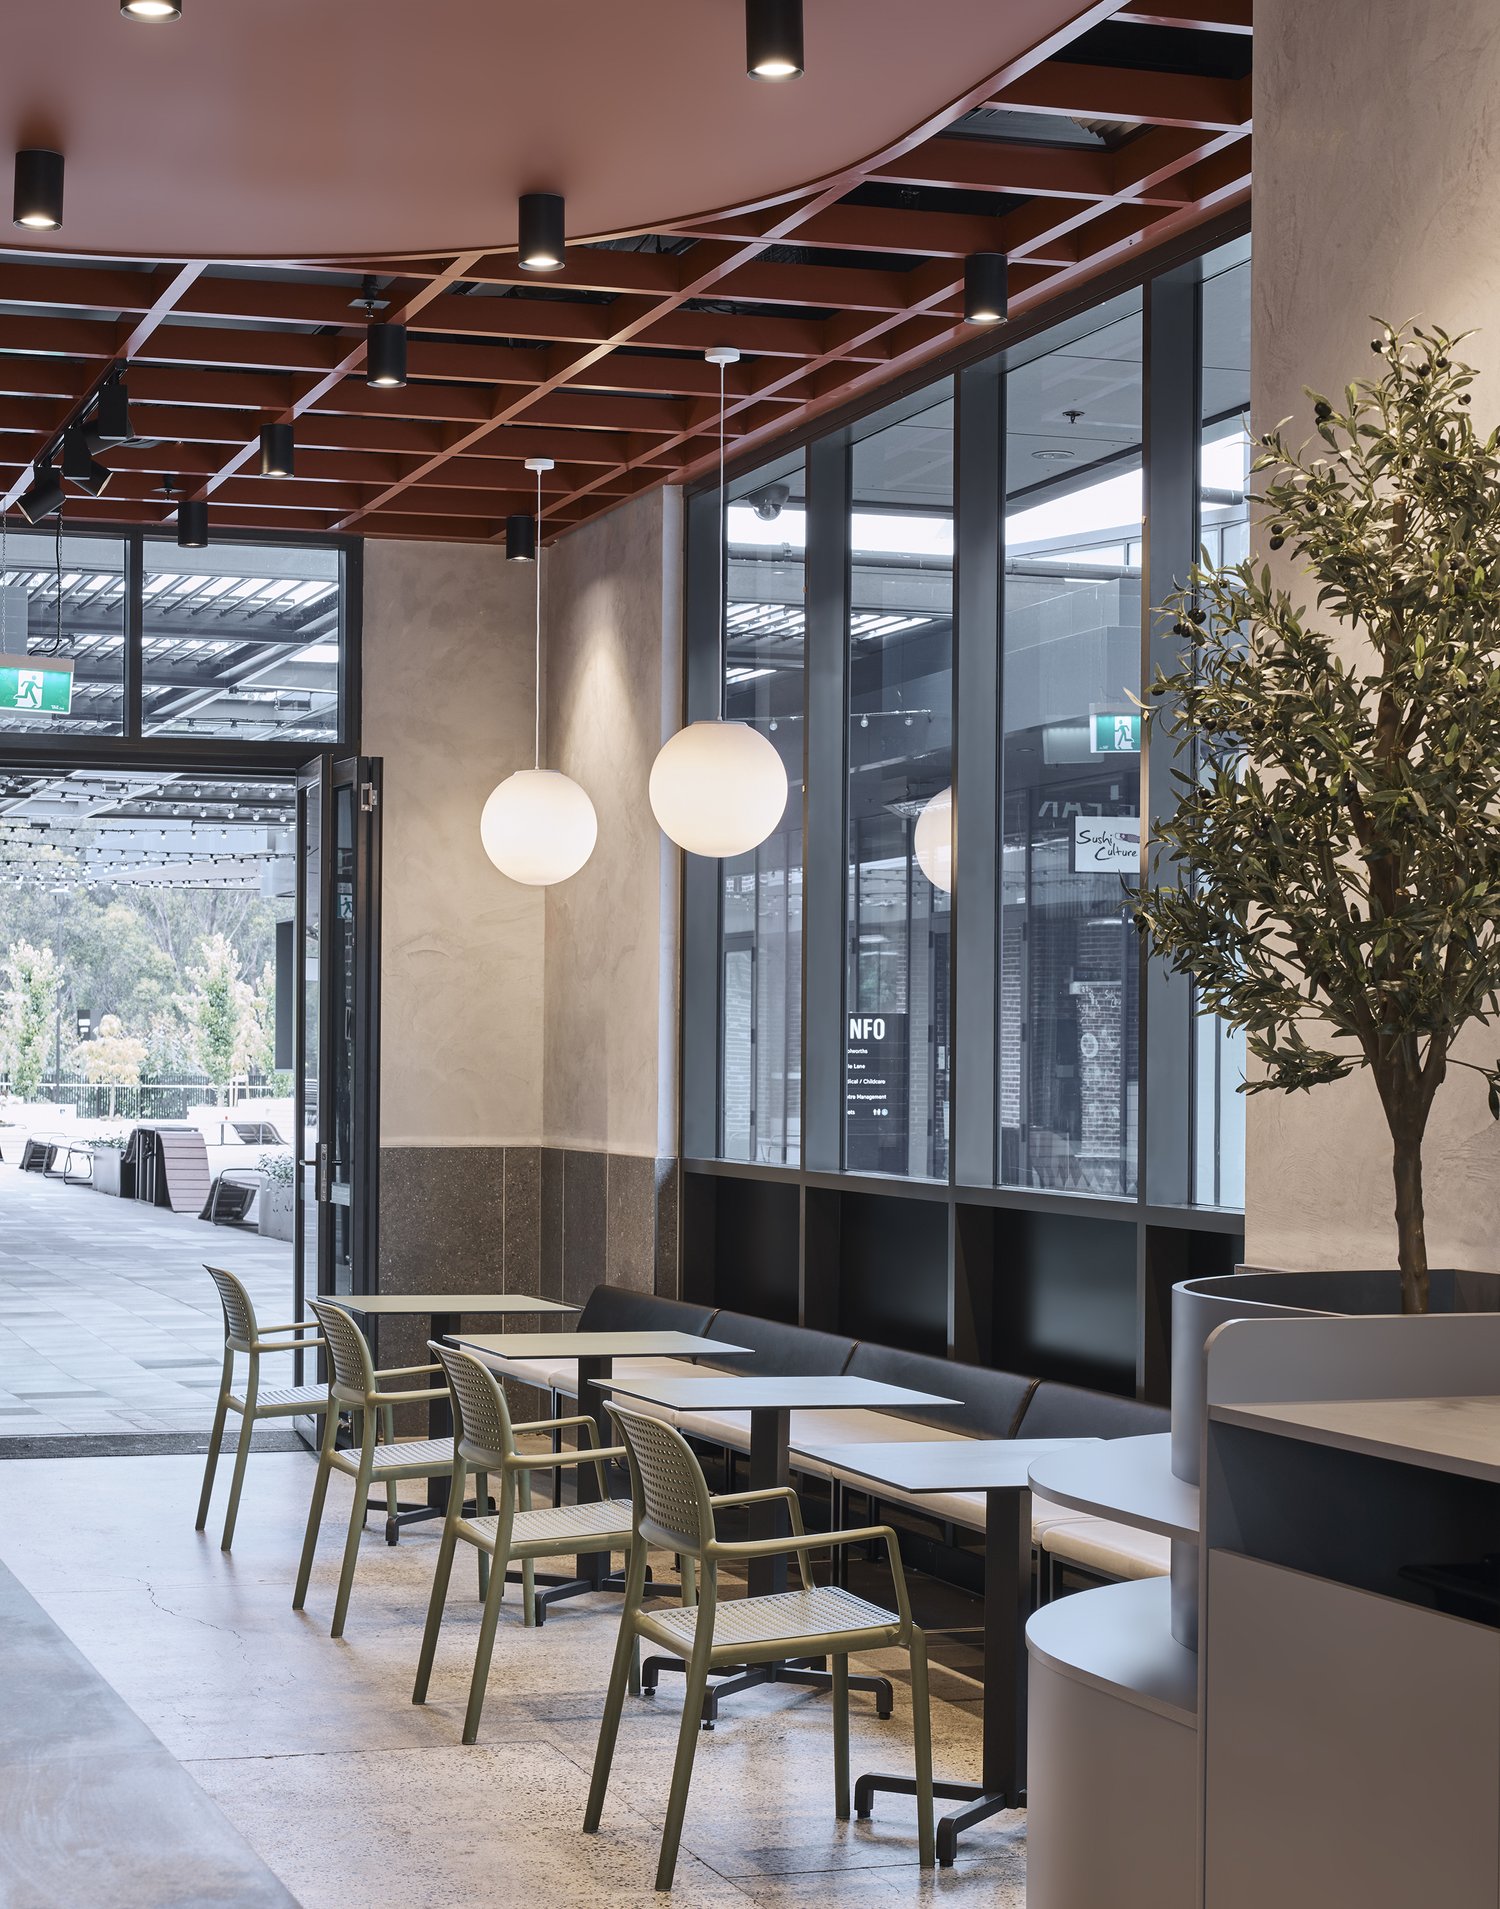 dine in area café design - al and co haus of design - sydney